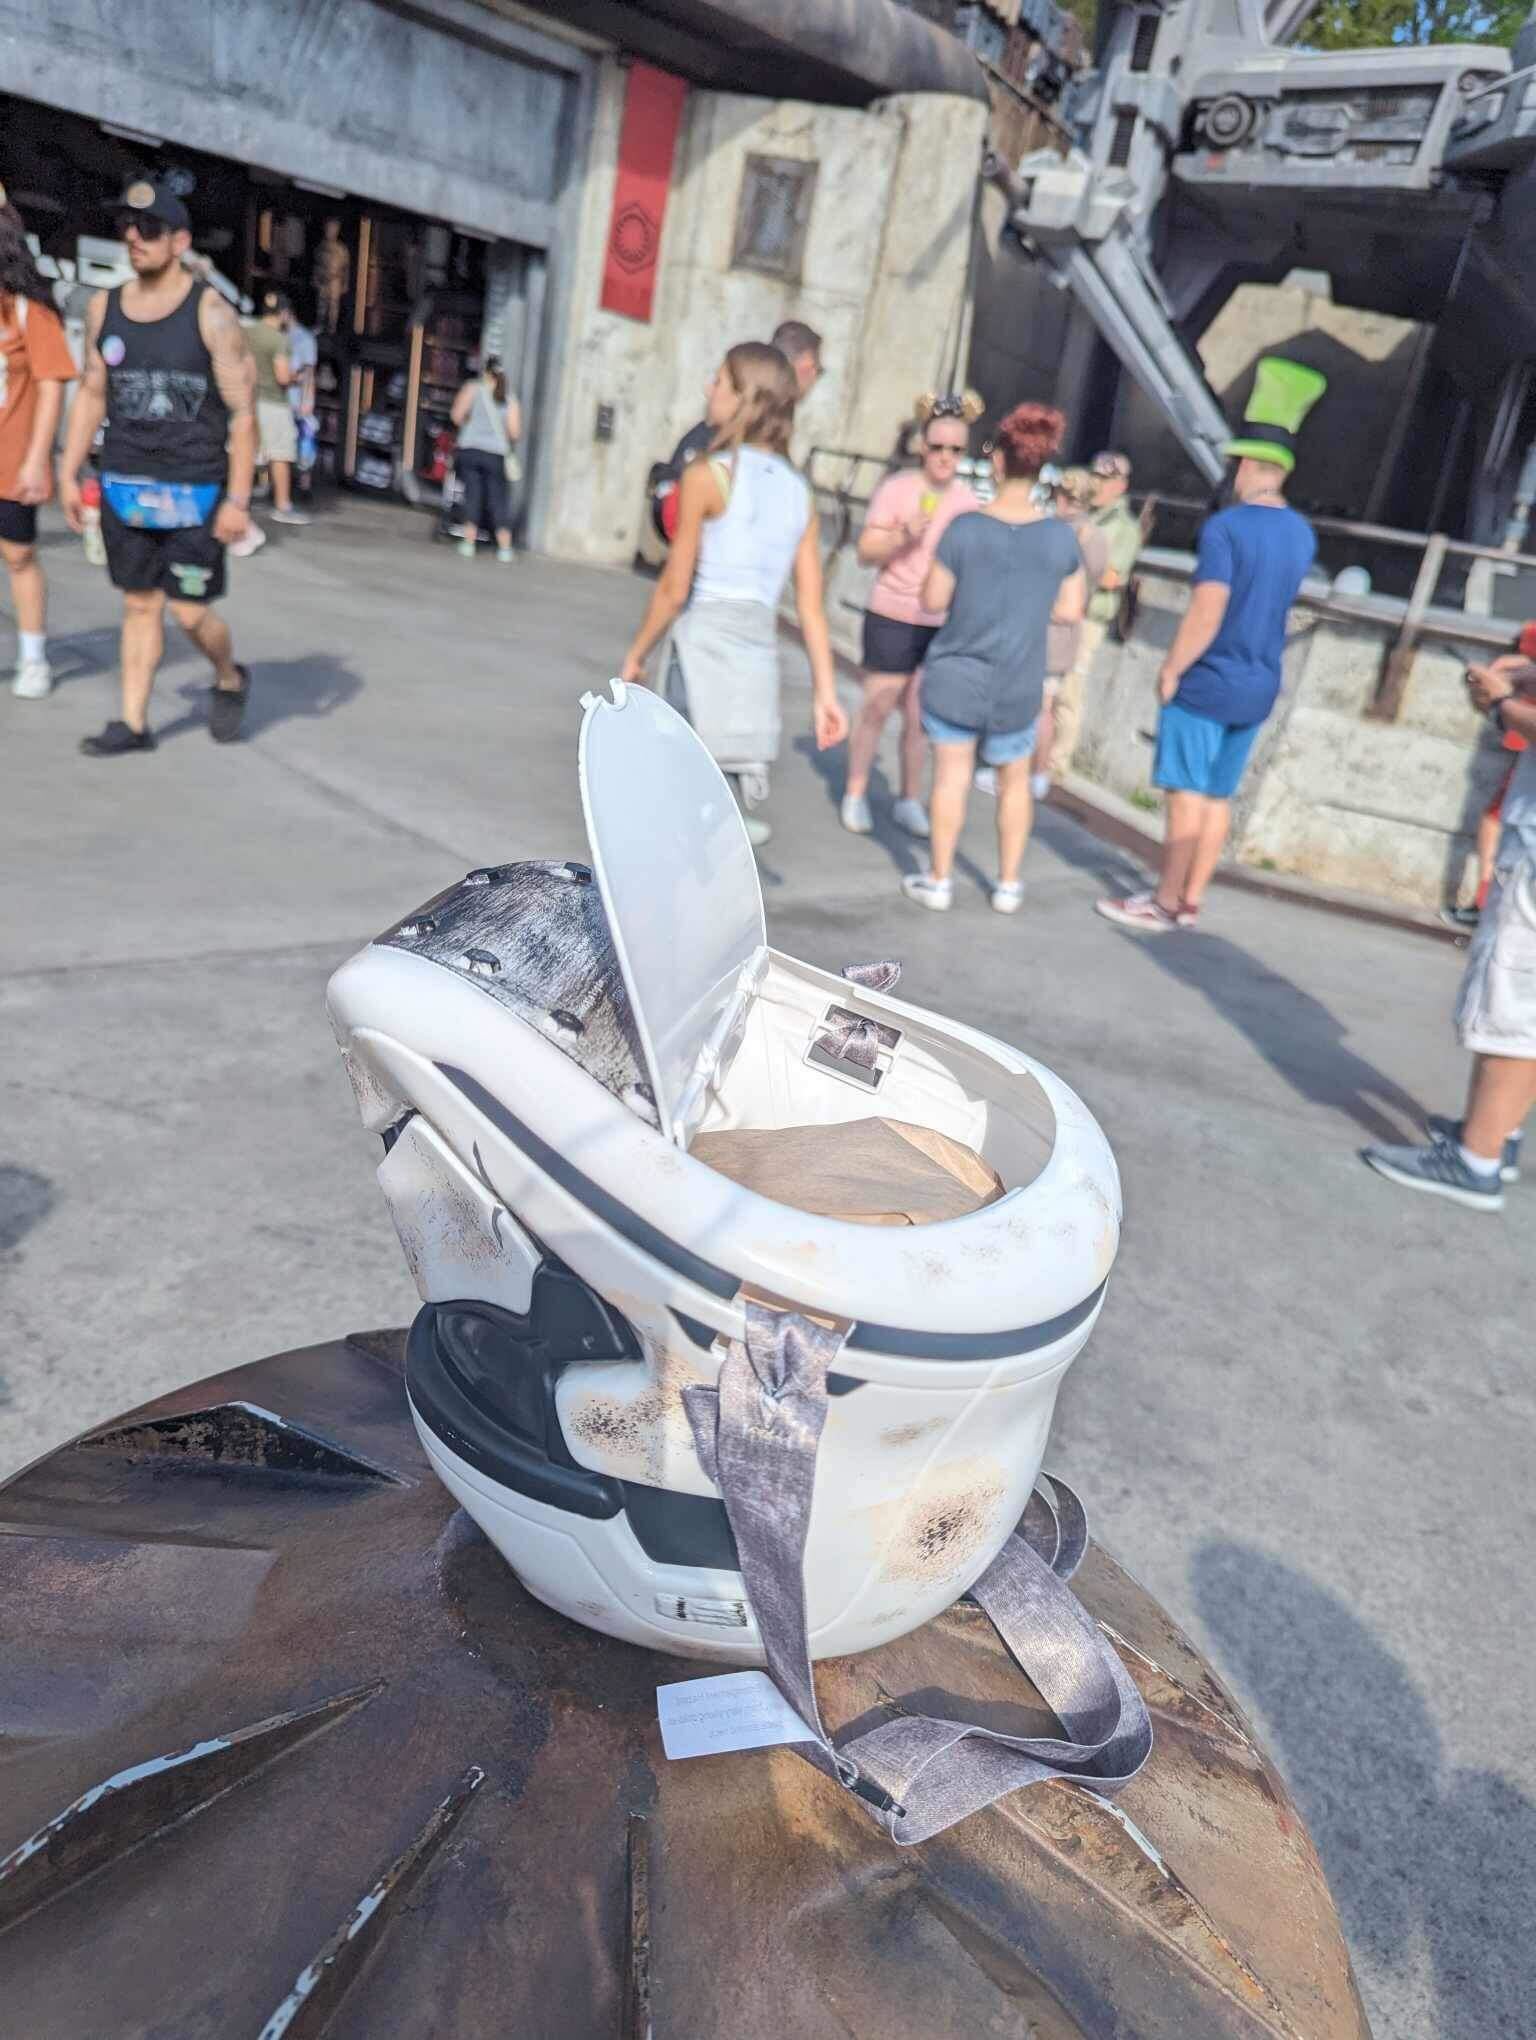 storm trooper helmet popcorn bucket